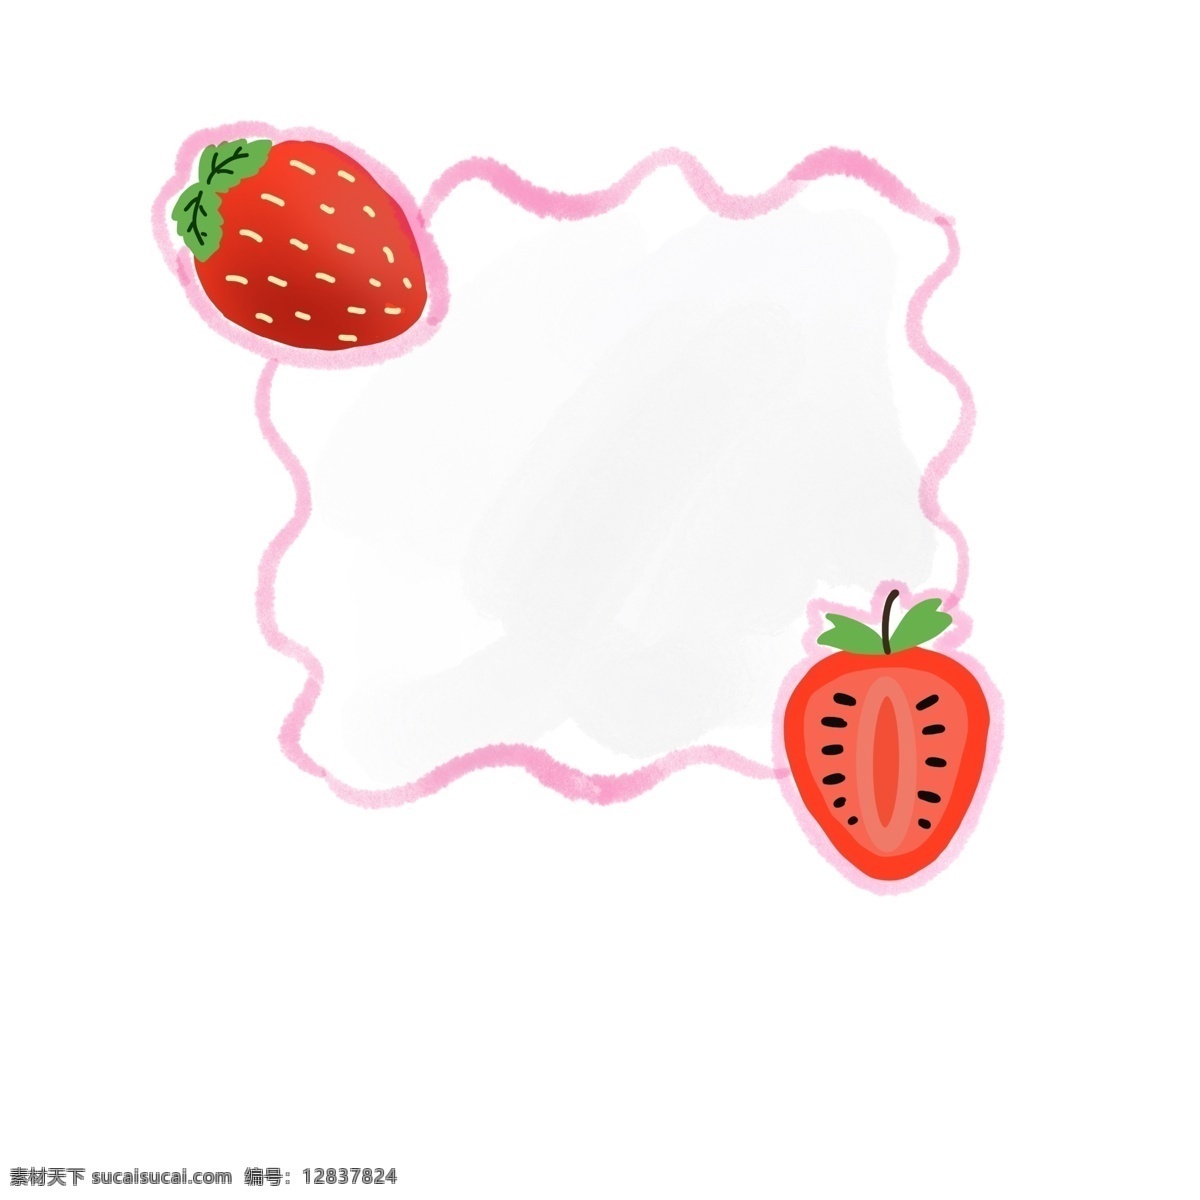 夏日 小 清新 水果 边框 草莓 小清新